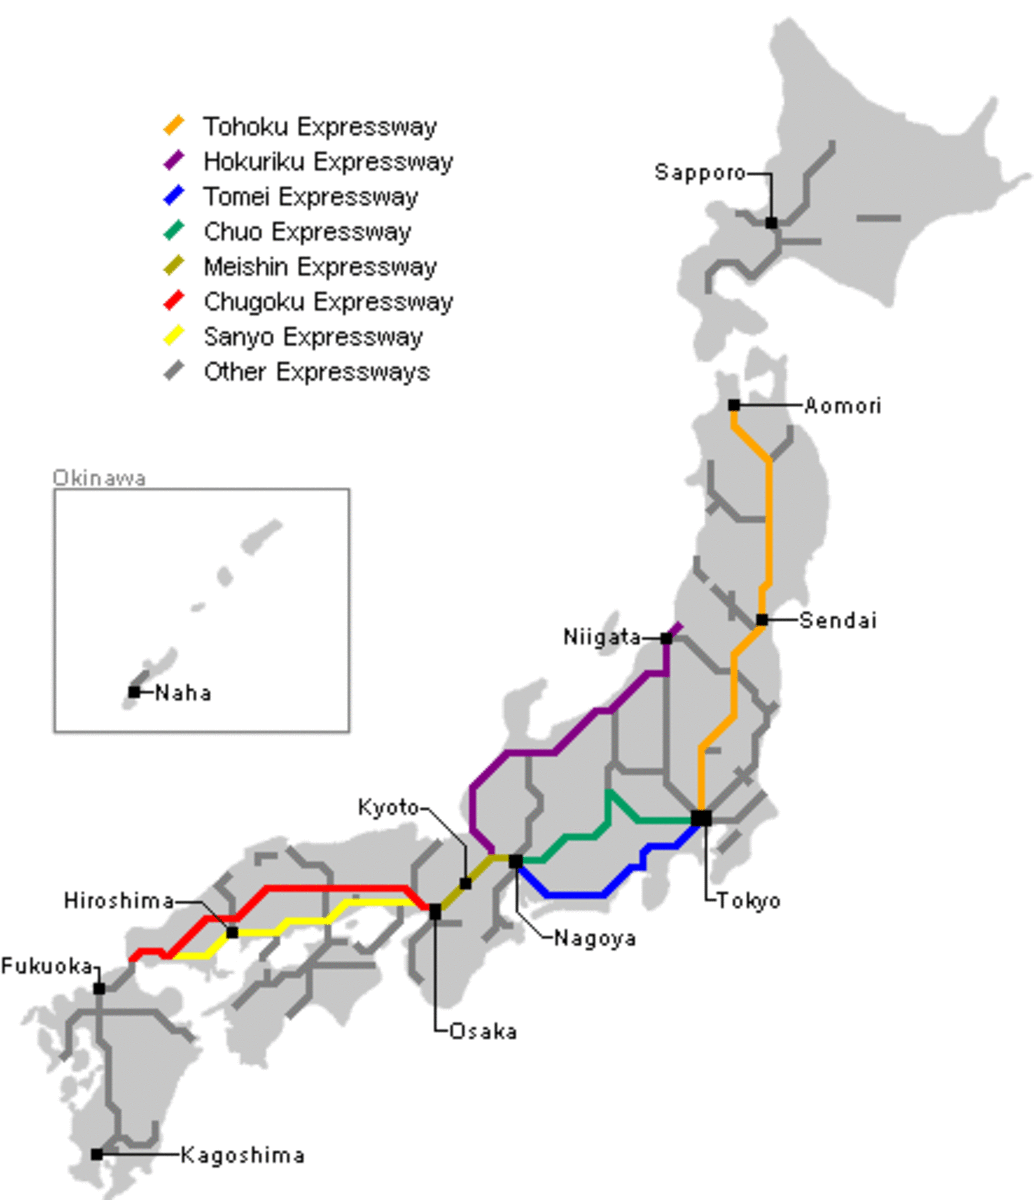 Expressway network.